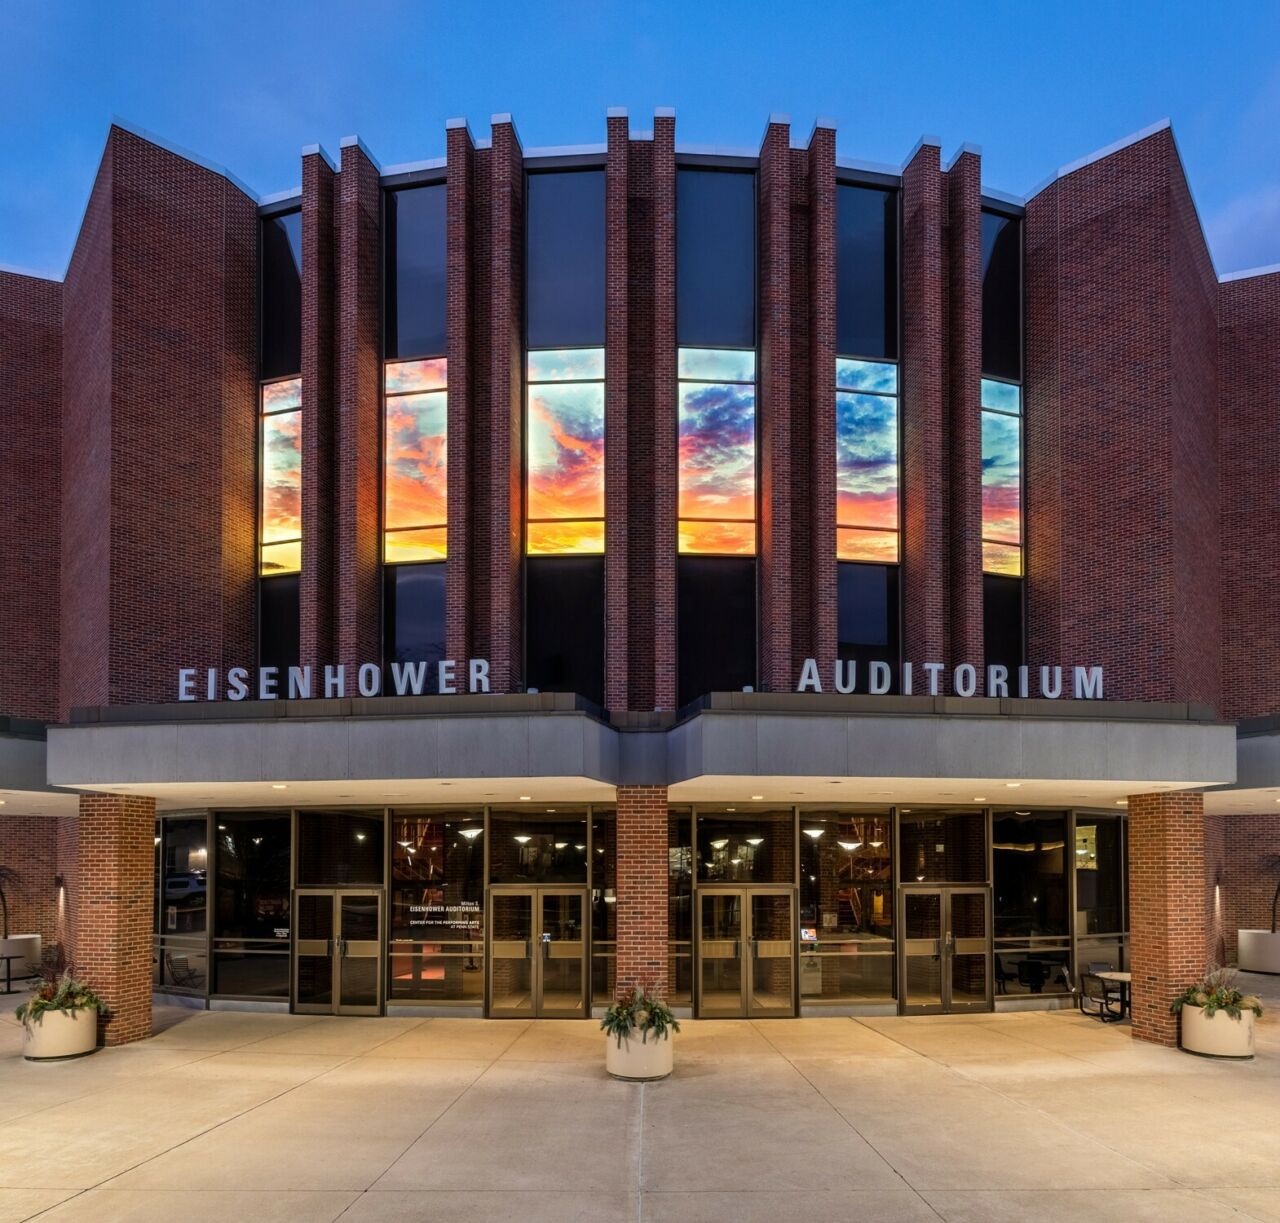 Exterior of Eisenhower Auditorium at evening